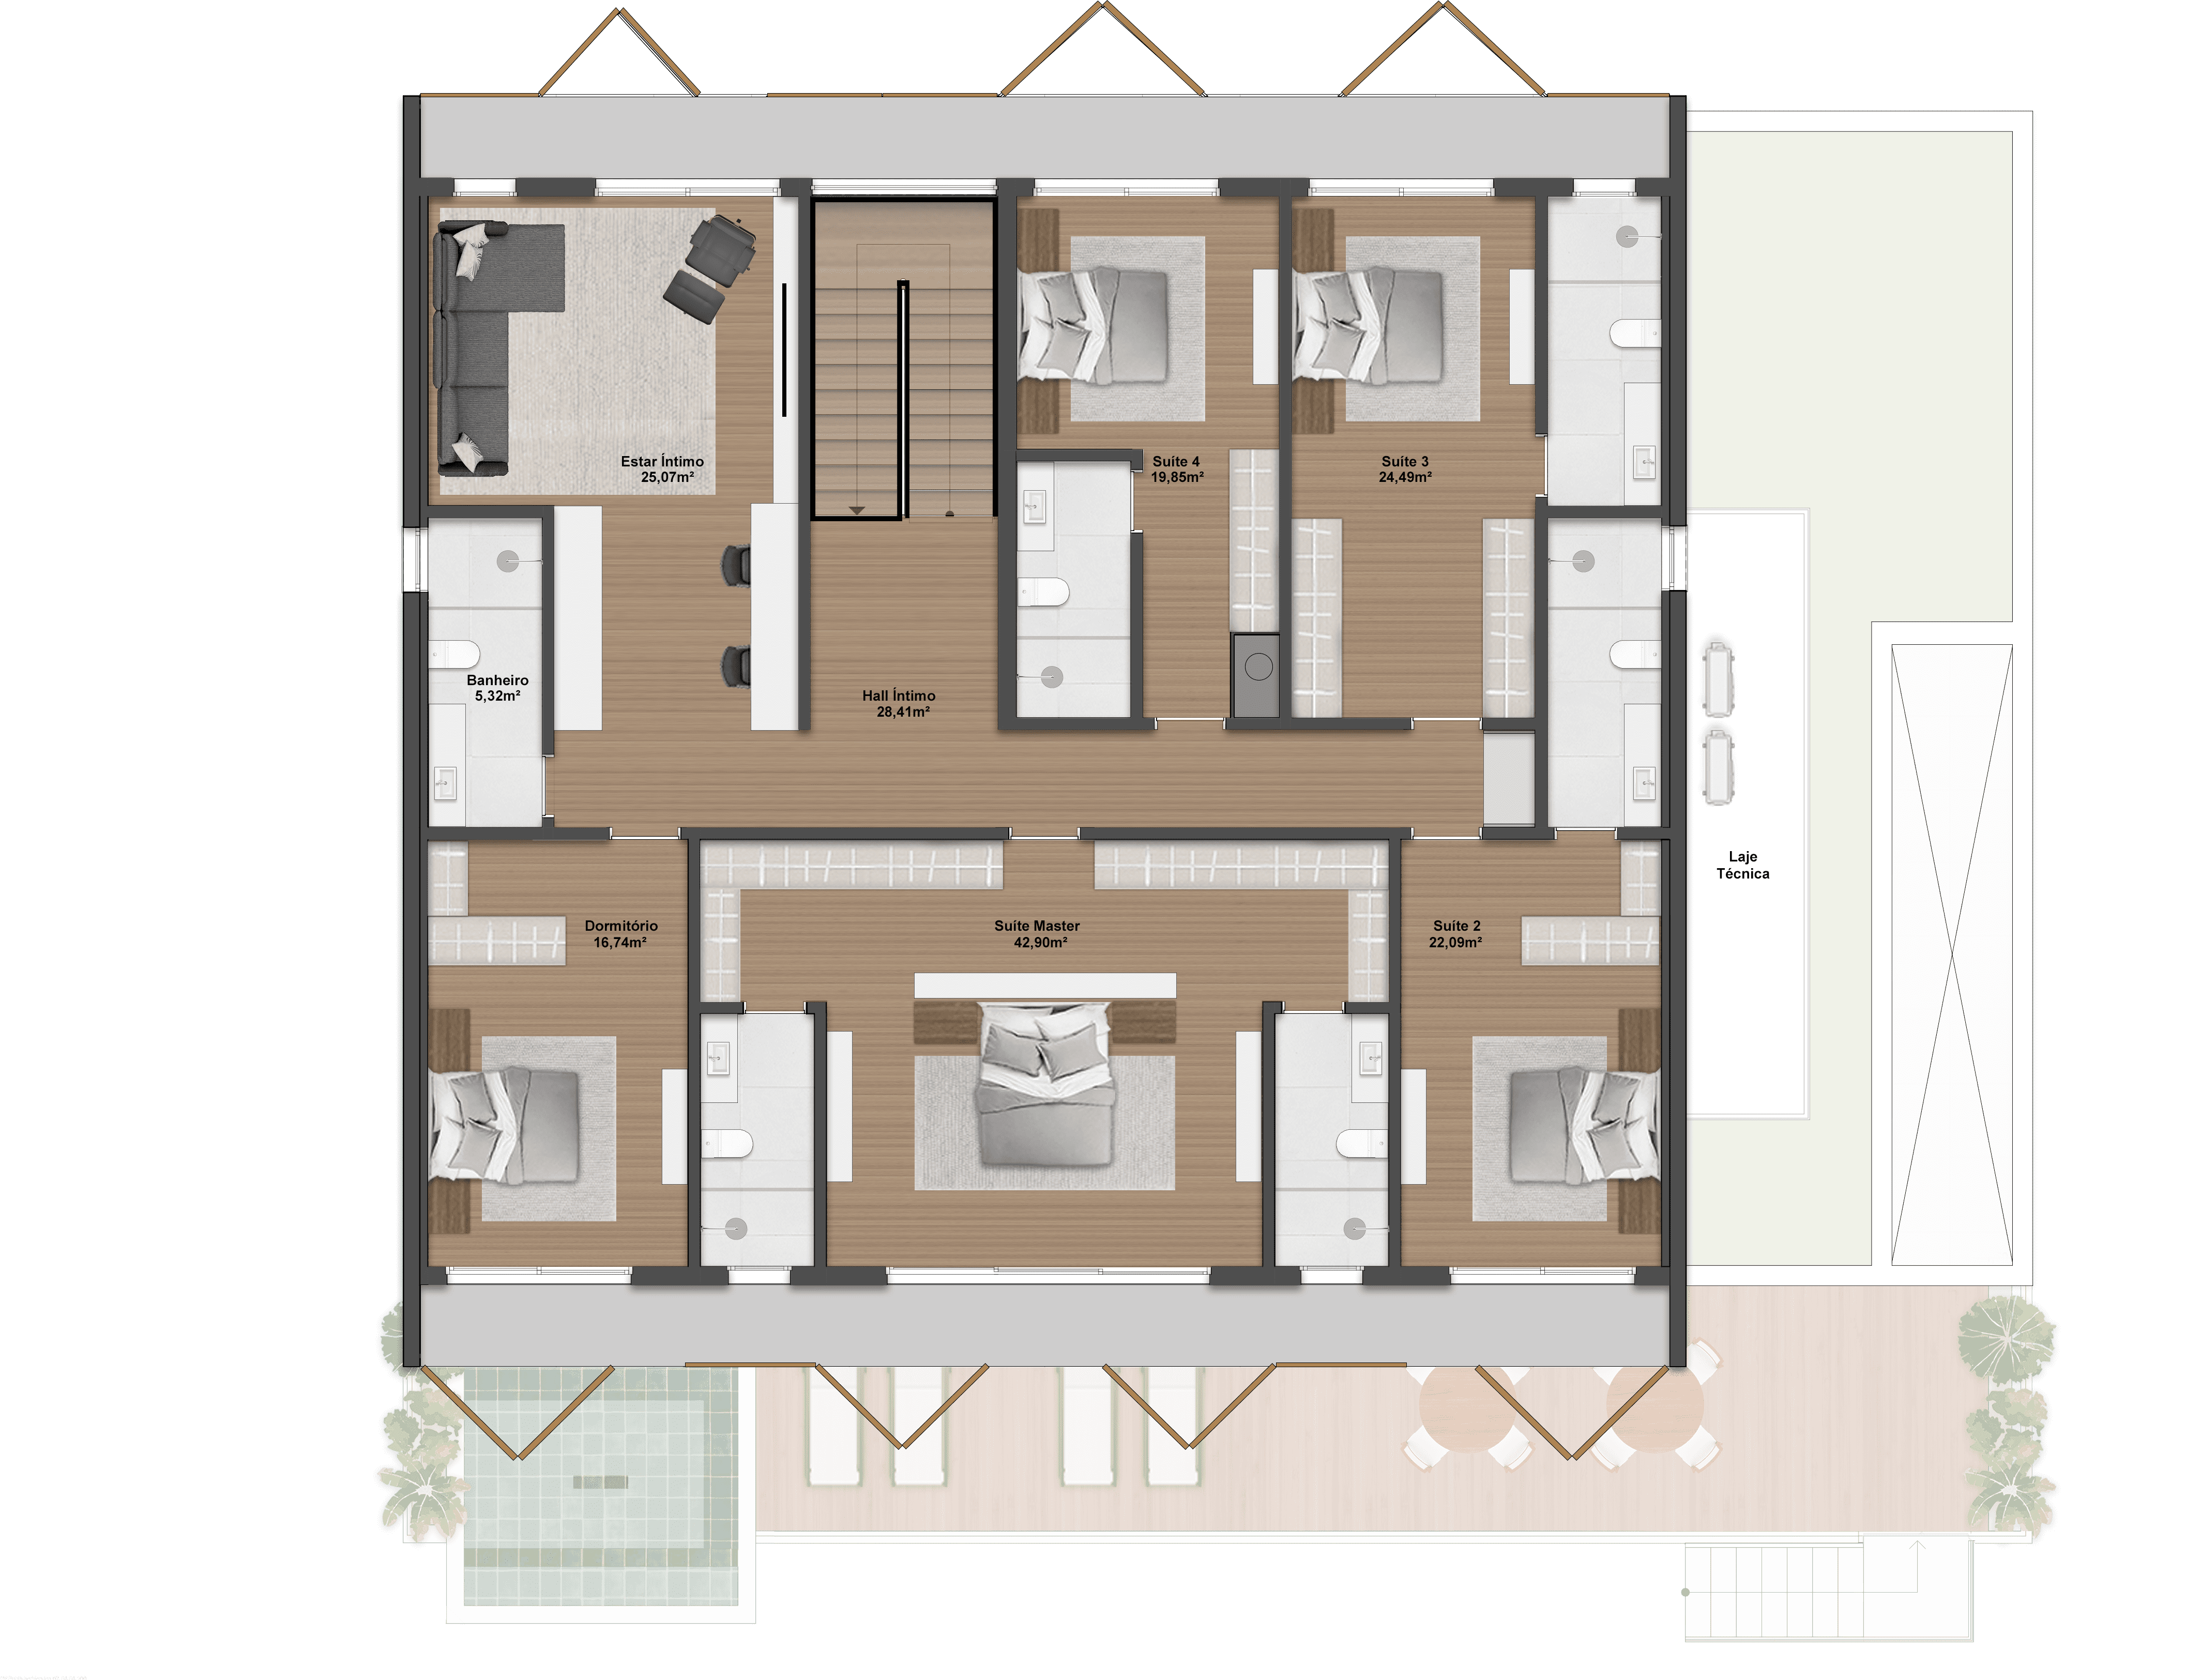 589,93m² | Opção 1 | Pavimento superior | 4 Suítes + 1 Dormitório + Adega